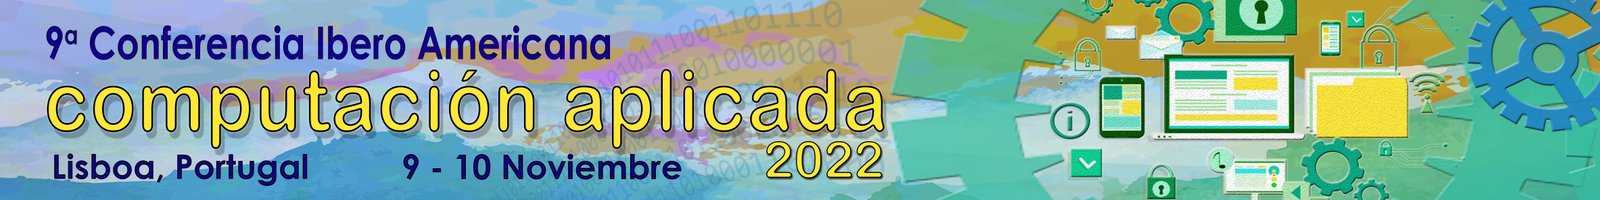 CIACA 2022 ES